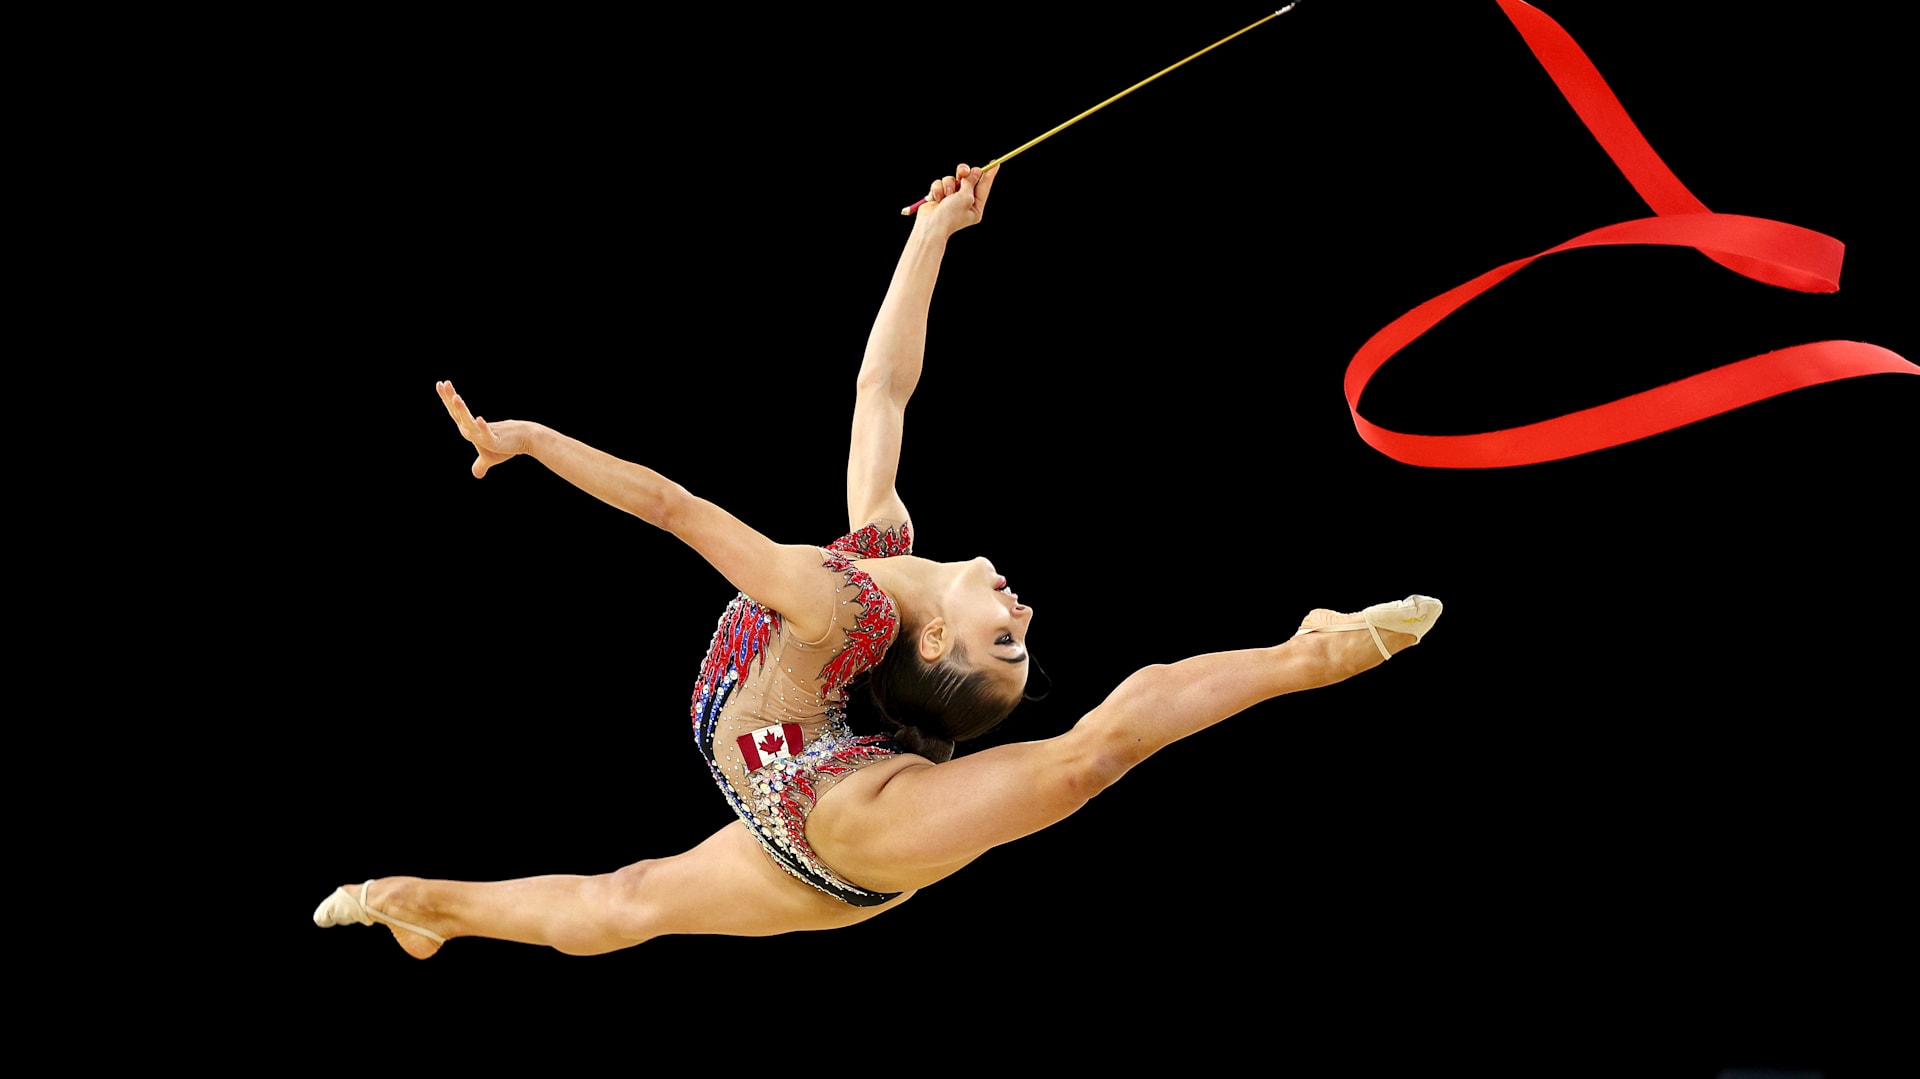 Hoops for rhythmic gymnastics  RSG - shop - Professional devices